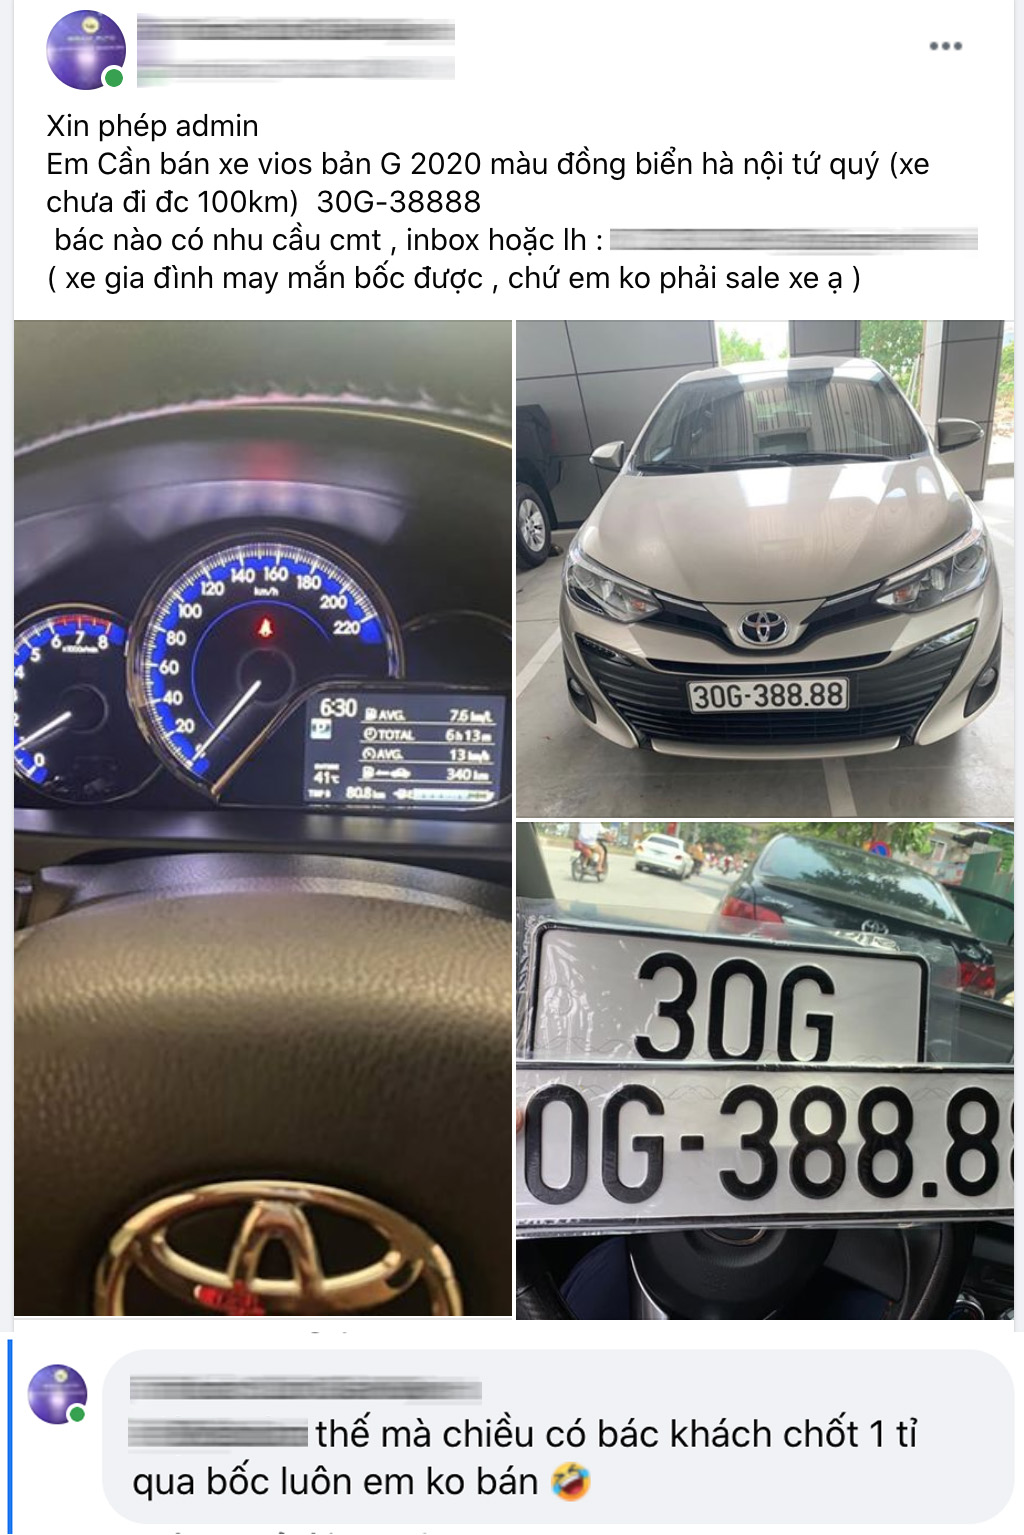 Bốc được biển tứ quý 8, chủ Toyota Vios tại Hà Nội bán lại giá hơn 1 tỷ, khẳng định khách chốt 1 tỷ lấy luôn còn không bán - Ảnh 2.